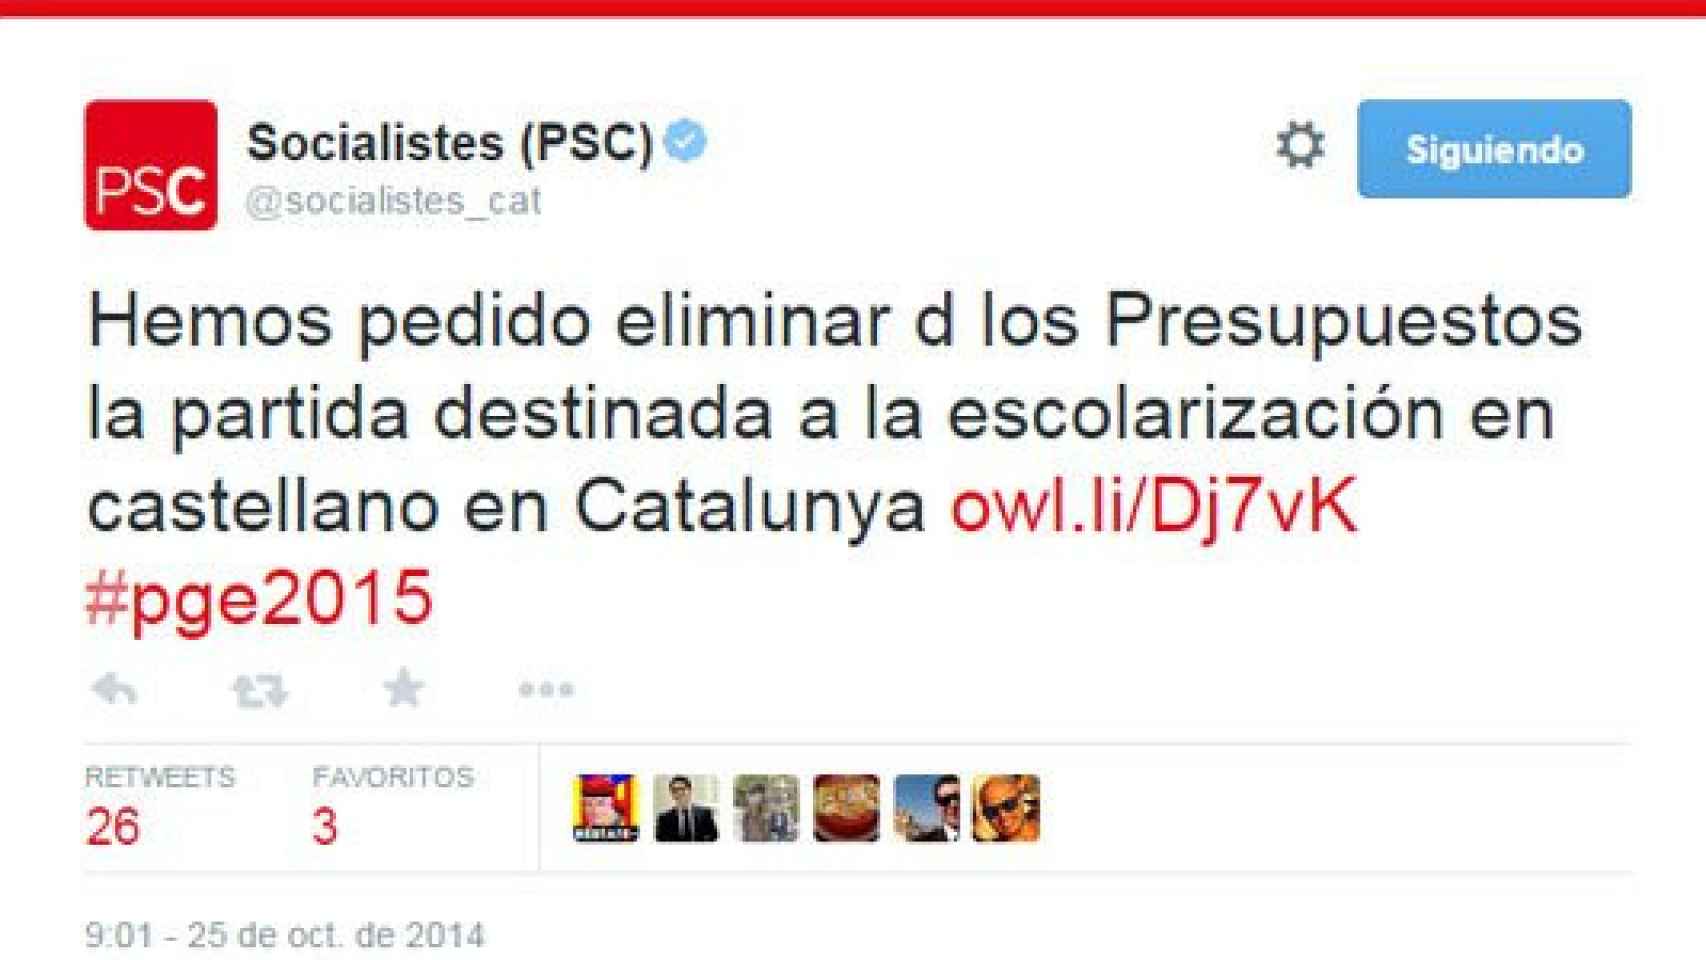 Tuit del PSC en el que anuncia su enmienda contra la partida de los Presupuestos destinada a garantizar una educación bilingüe en Cataluña